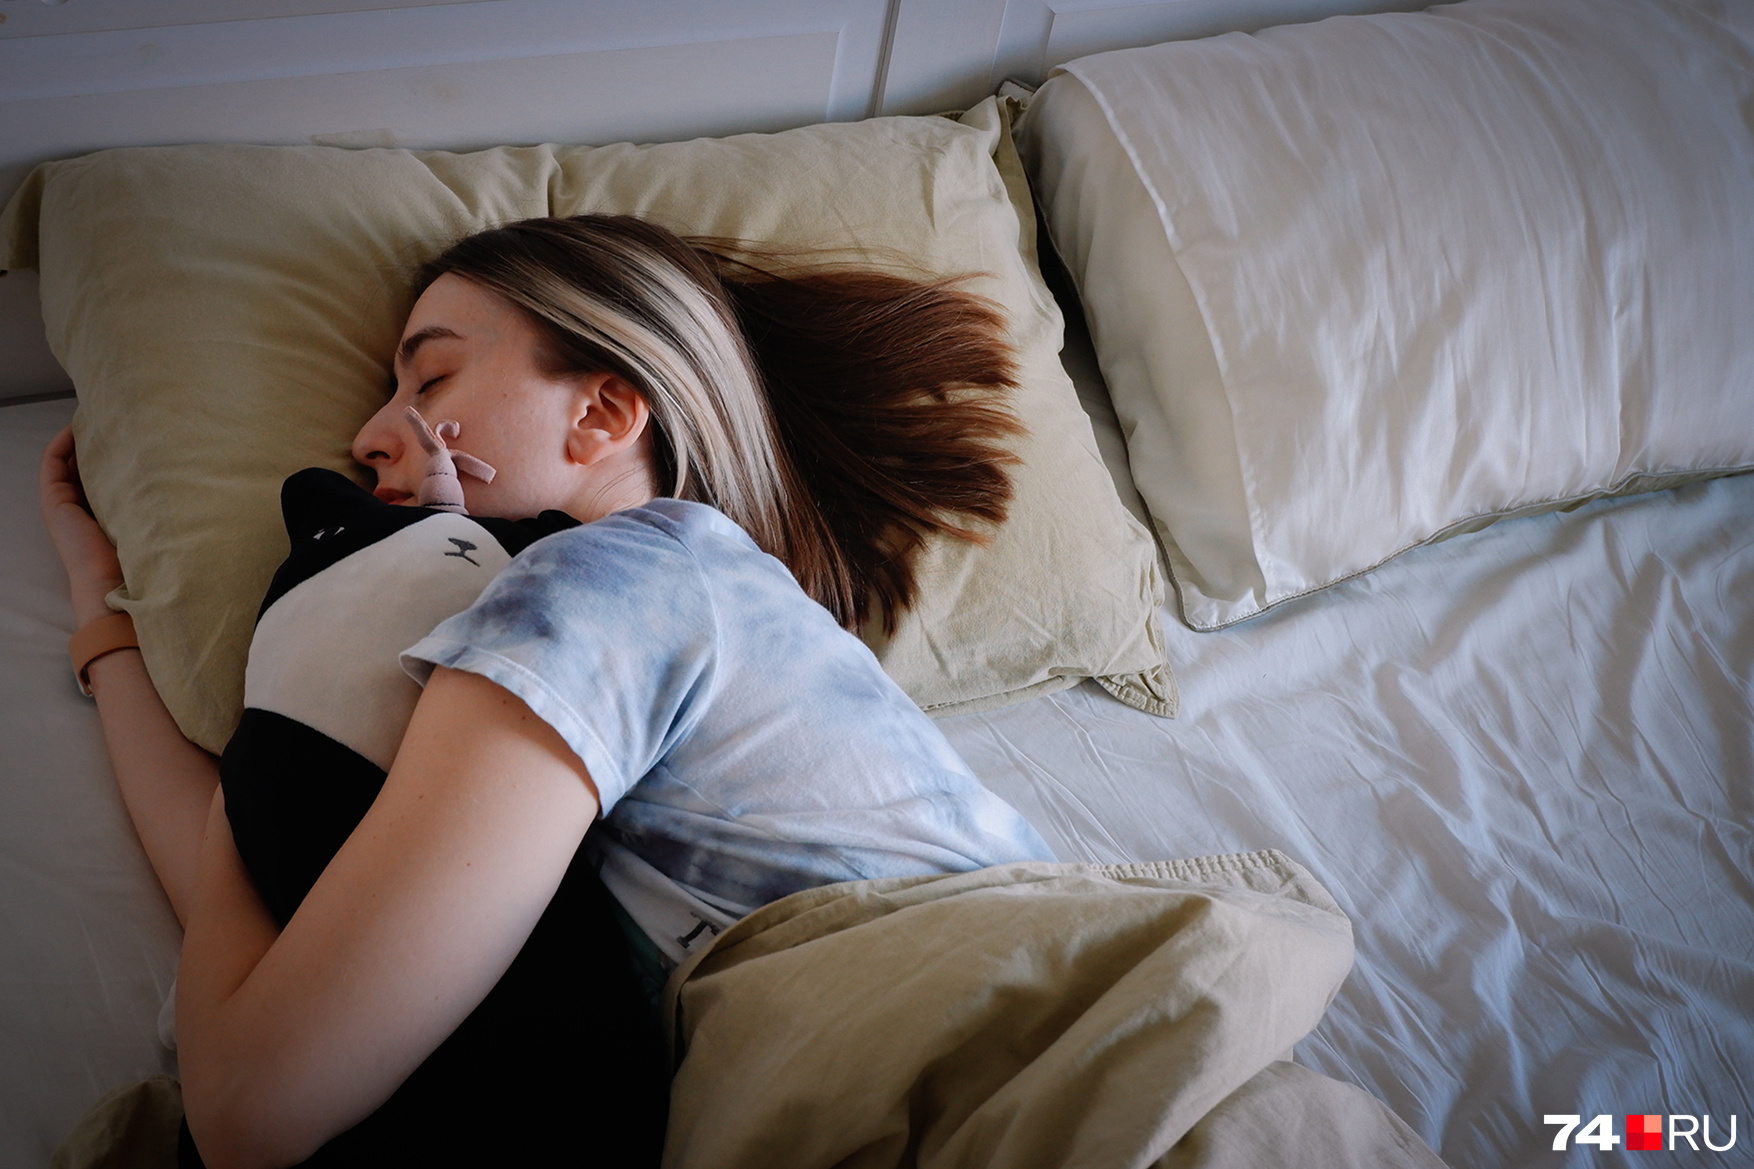 Быстрый тест на тревожность: выберите позу, в которой спите, а мы расскажем, чего вам не хватает